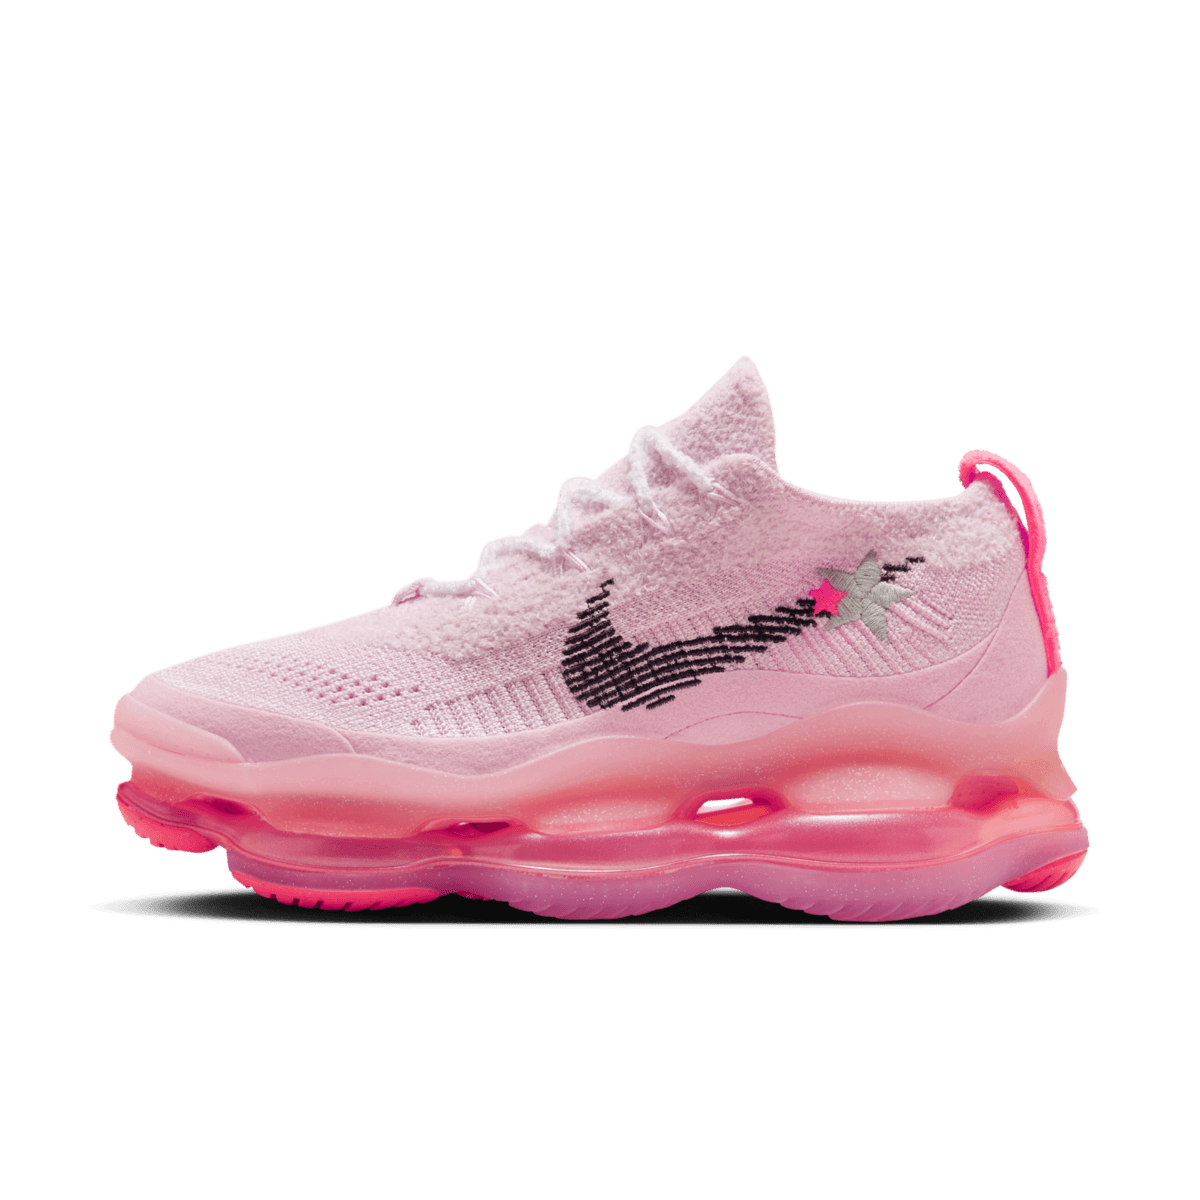 Nike Air Max Scorpion 'Hot Pink' FN8925-696